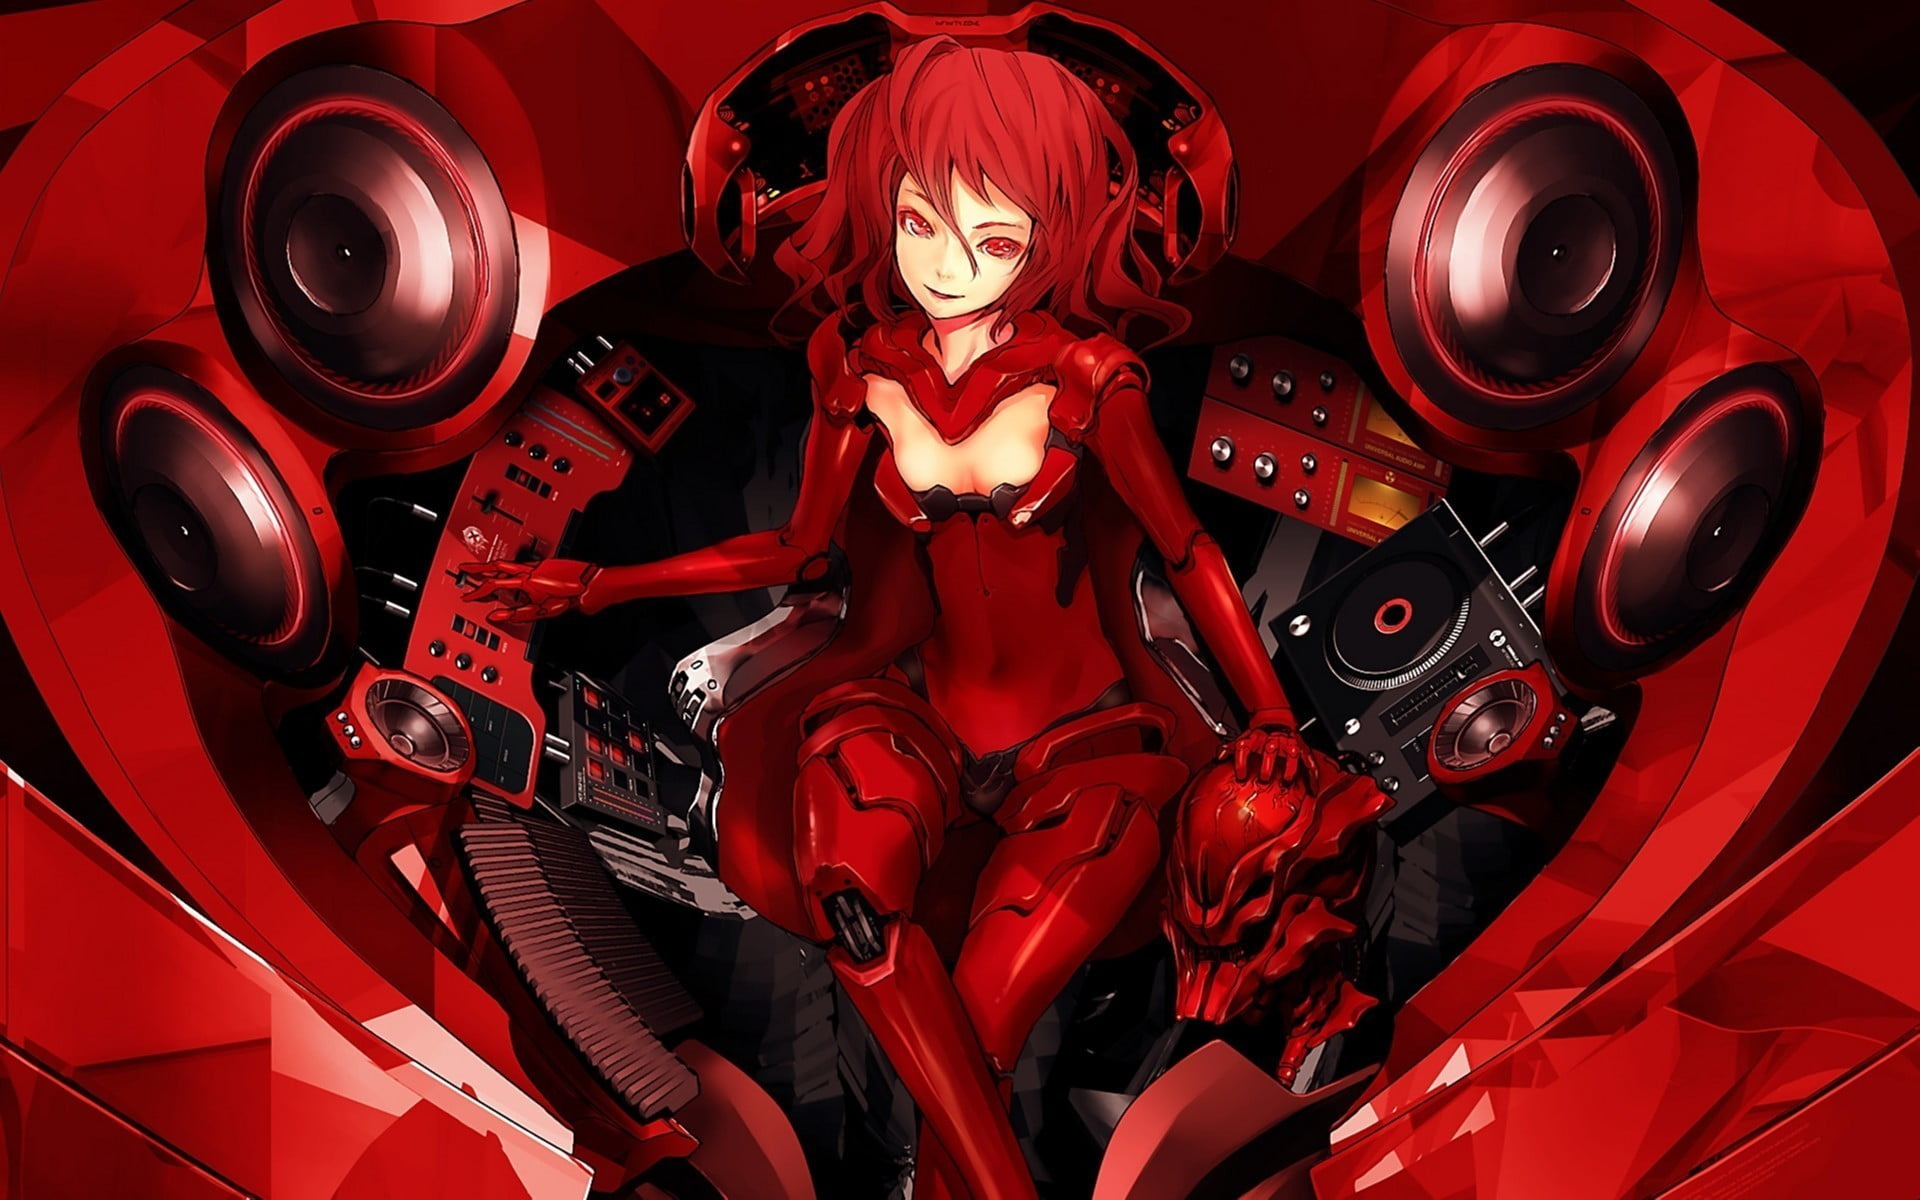 red haired girl anime character, artwork, fantasy art, cyborg